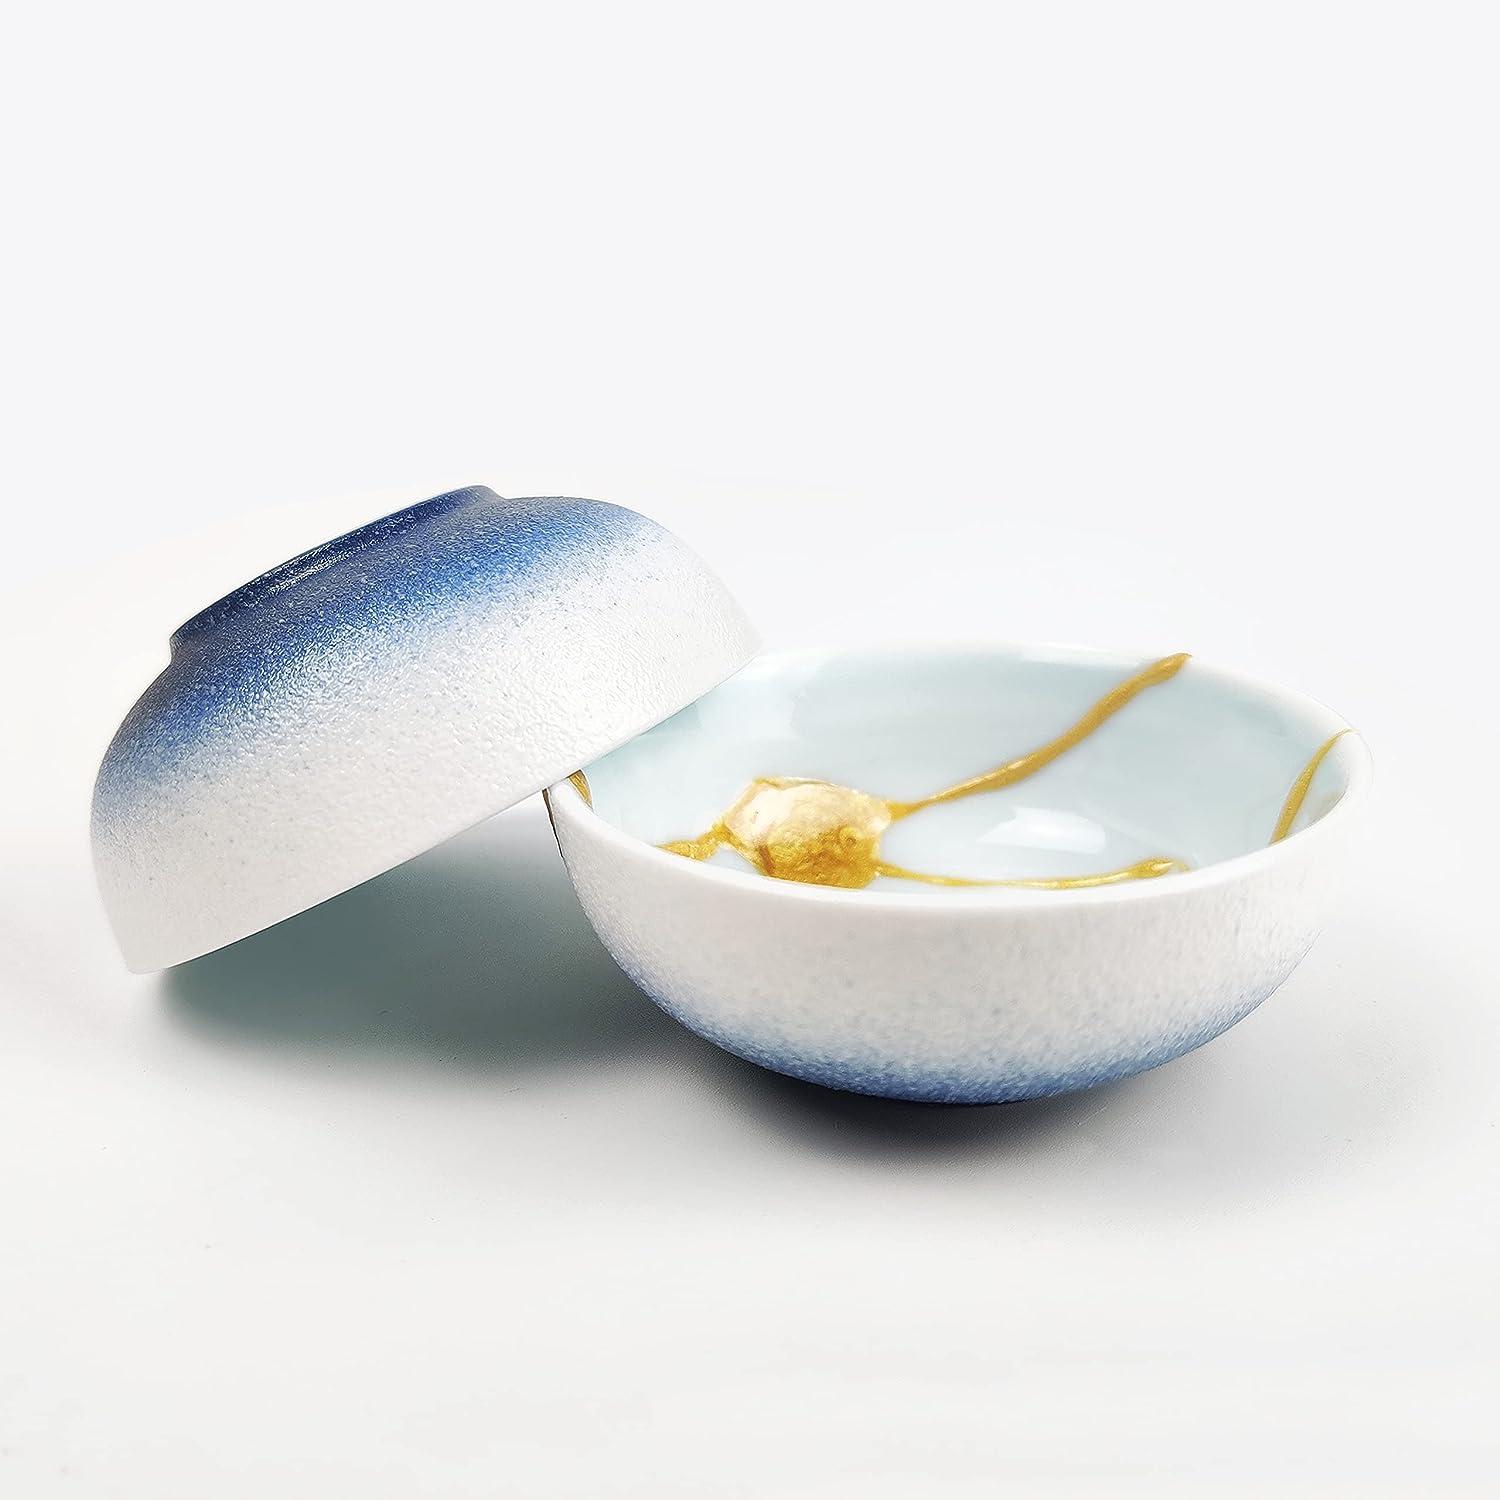 Ceramic Glue Food Grade, Glue For Porcelain And Pottery Repair